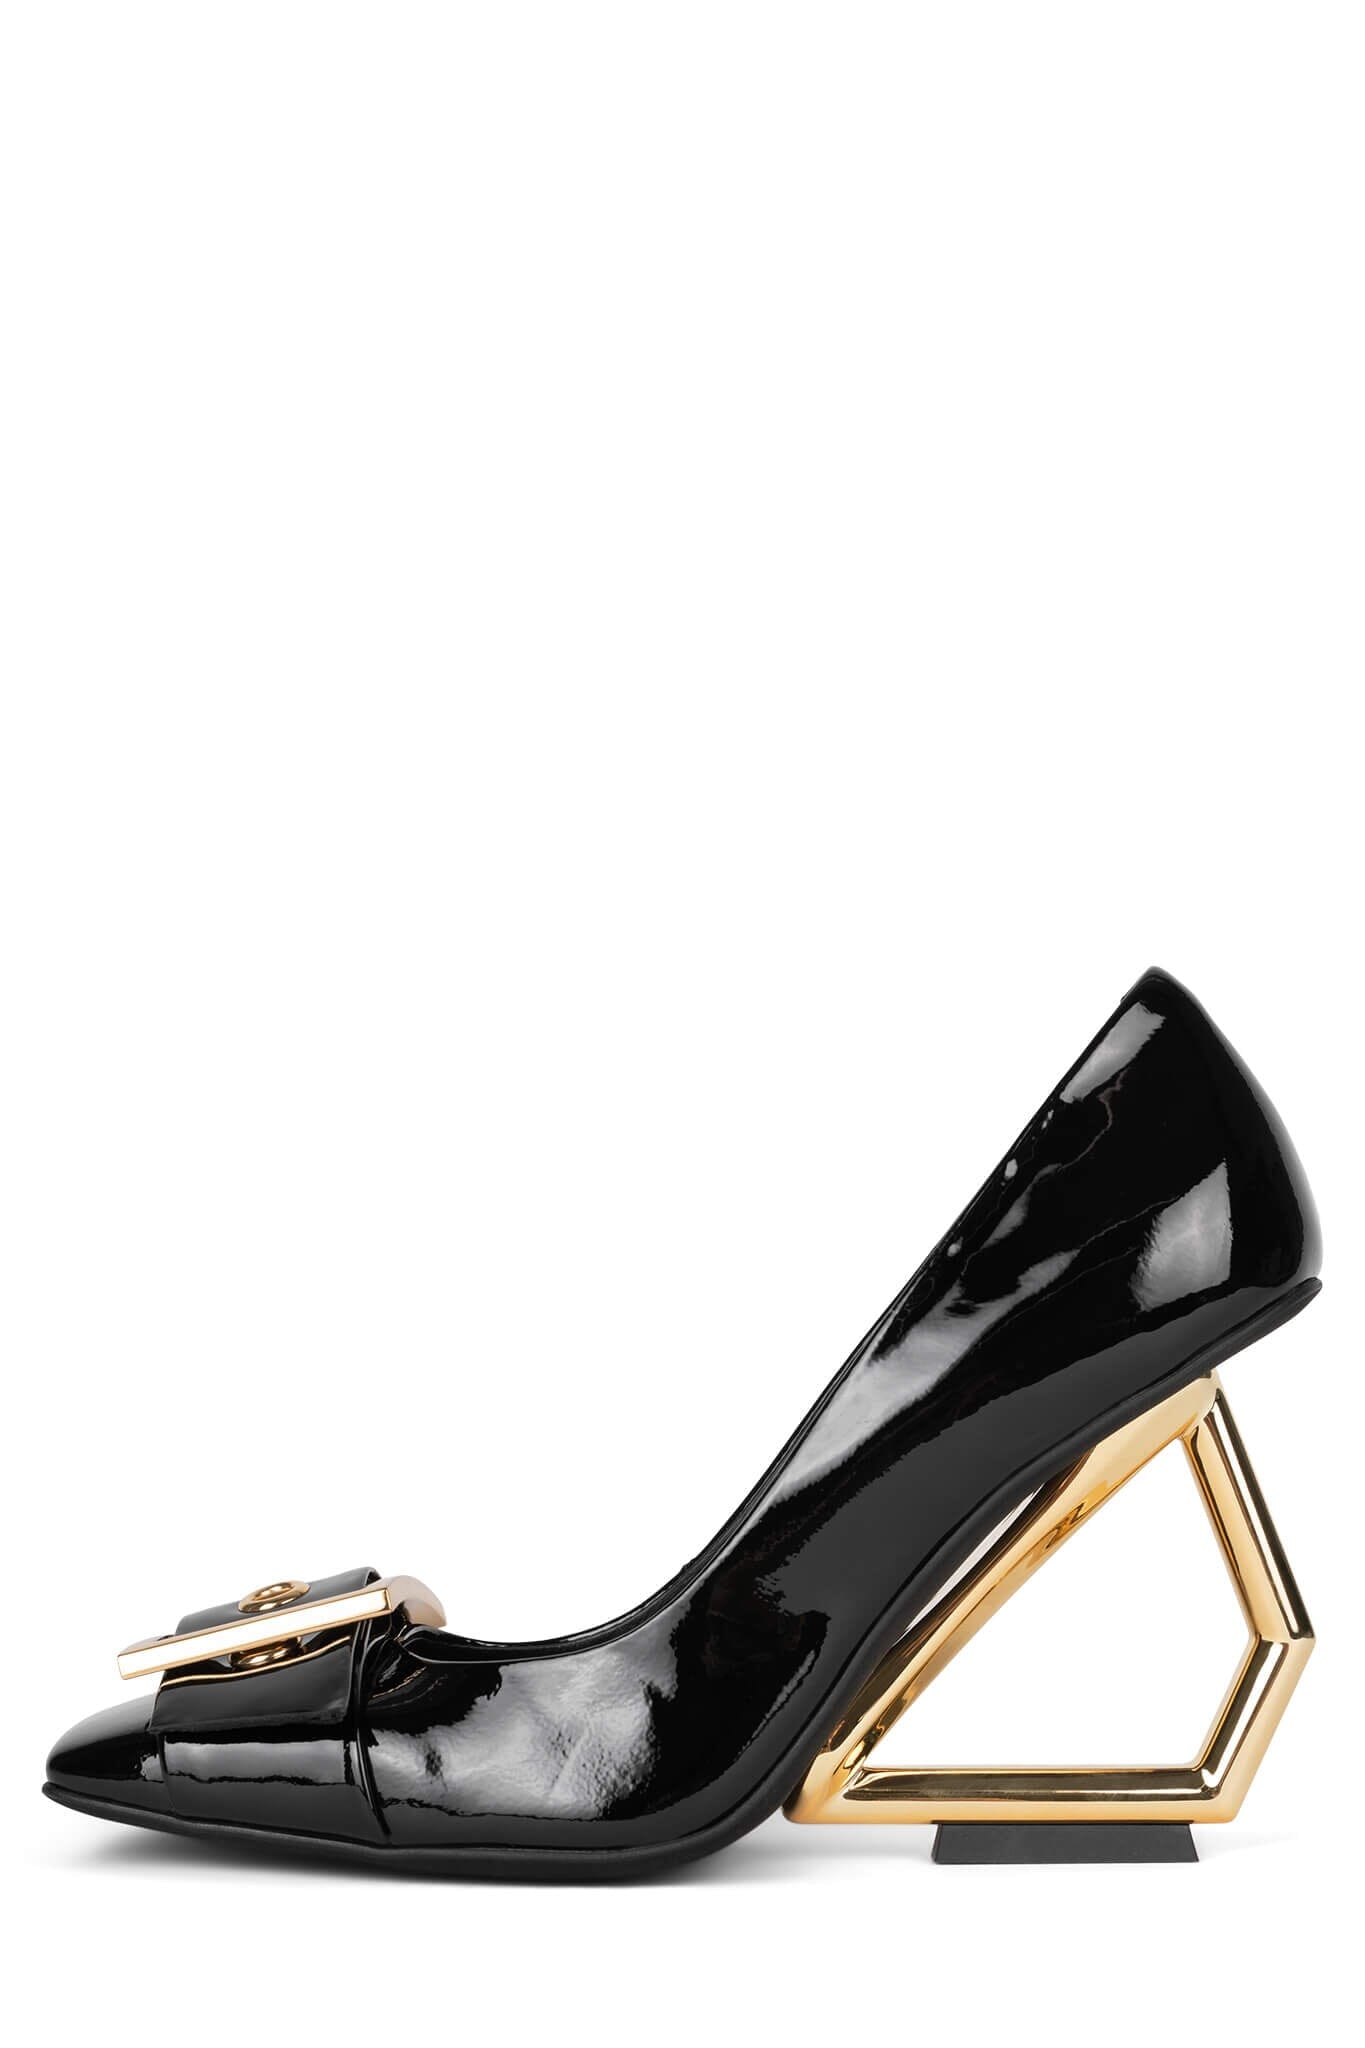 Versace Gold Heels💥💥SALE💥💥 | Gold heels, Heels sale, Versace gold